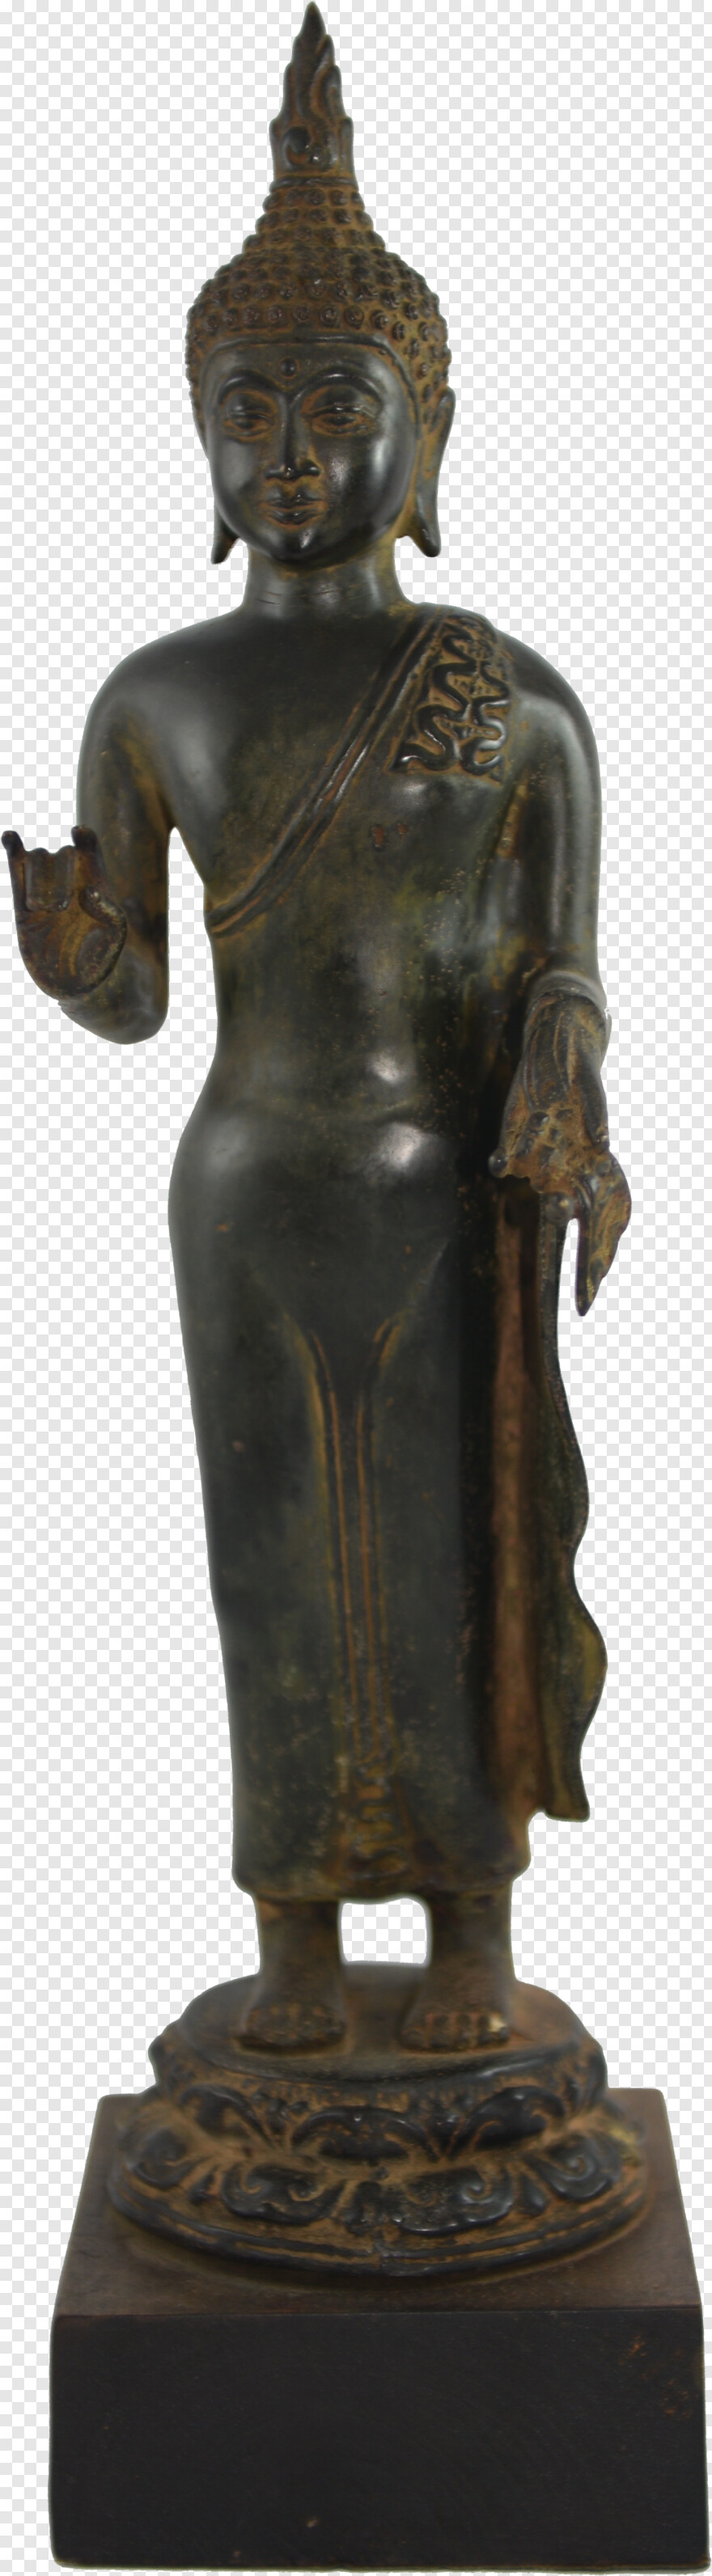 statue # 1105987